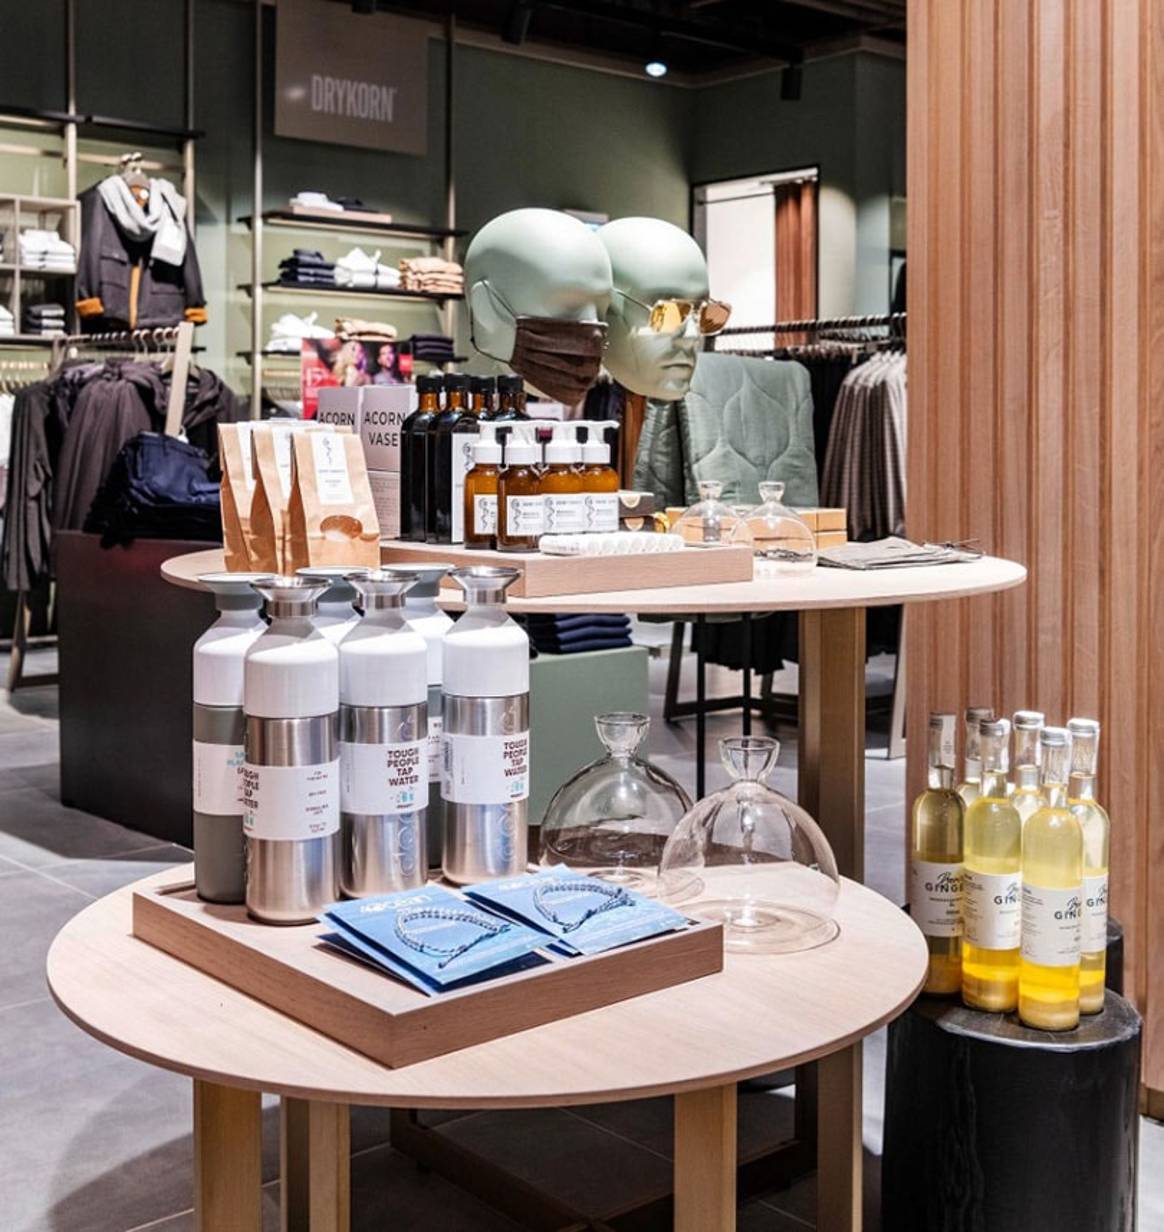 Kastner & Öhler eröffnet im Kaufhaus Tyrol, ersetzt P&C